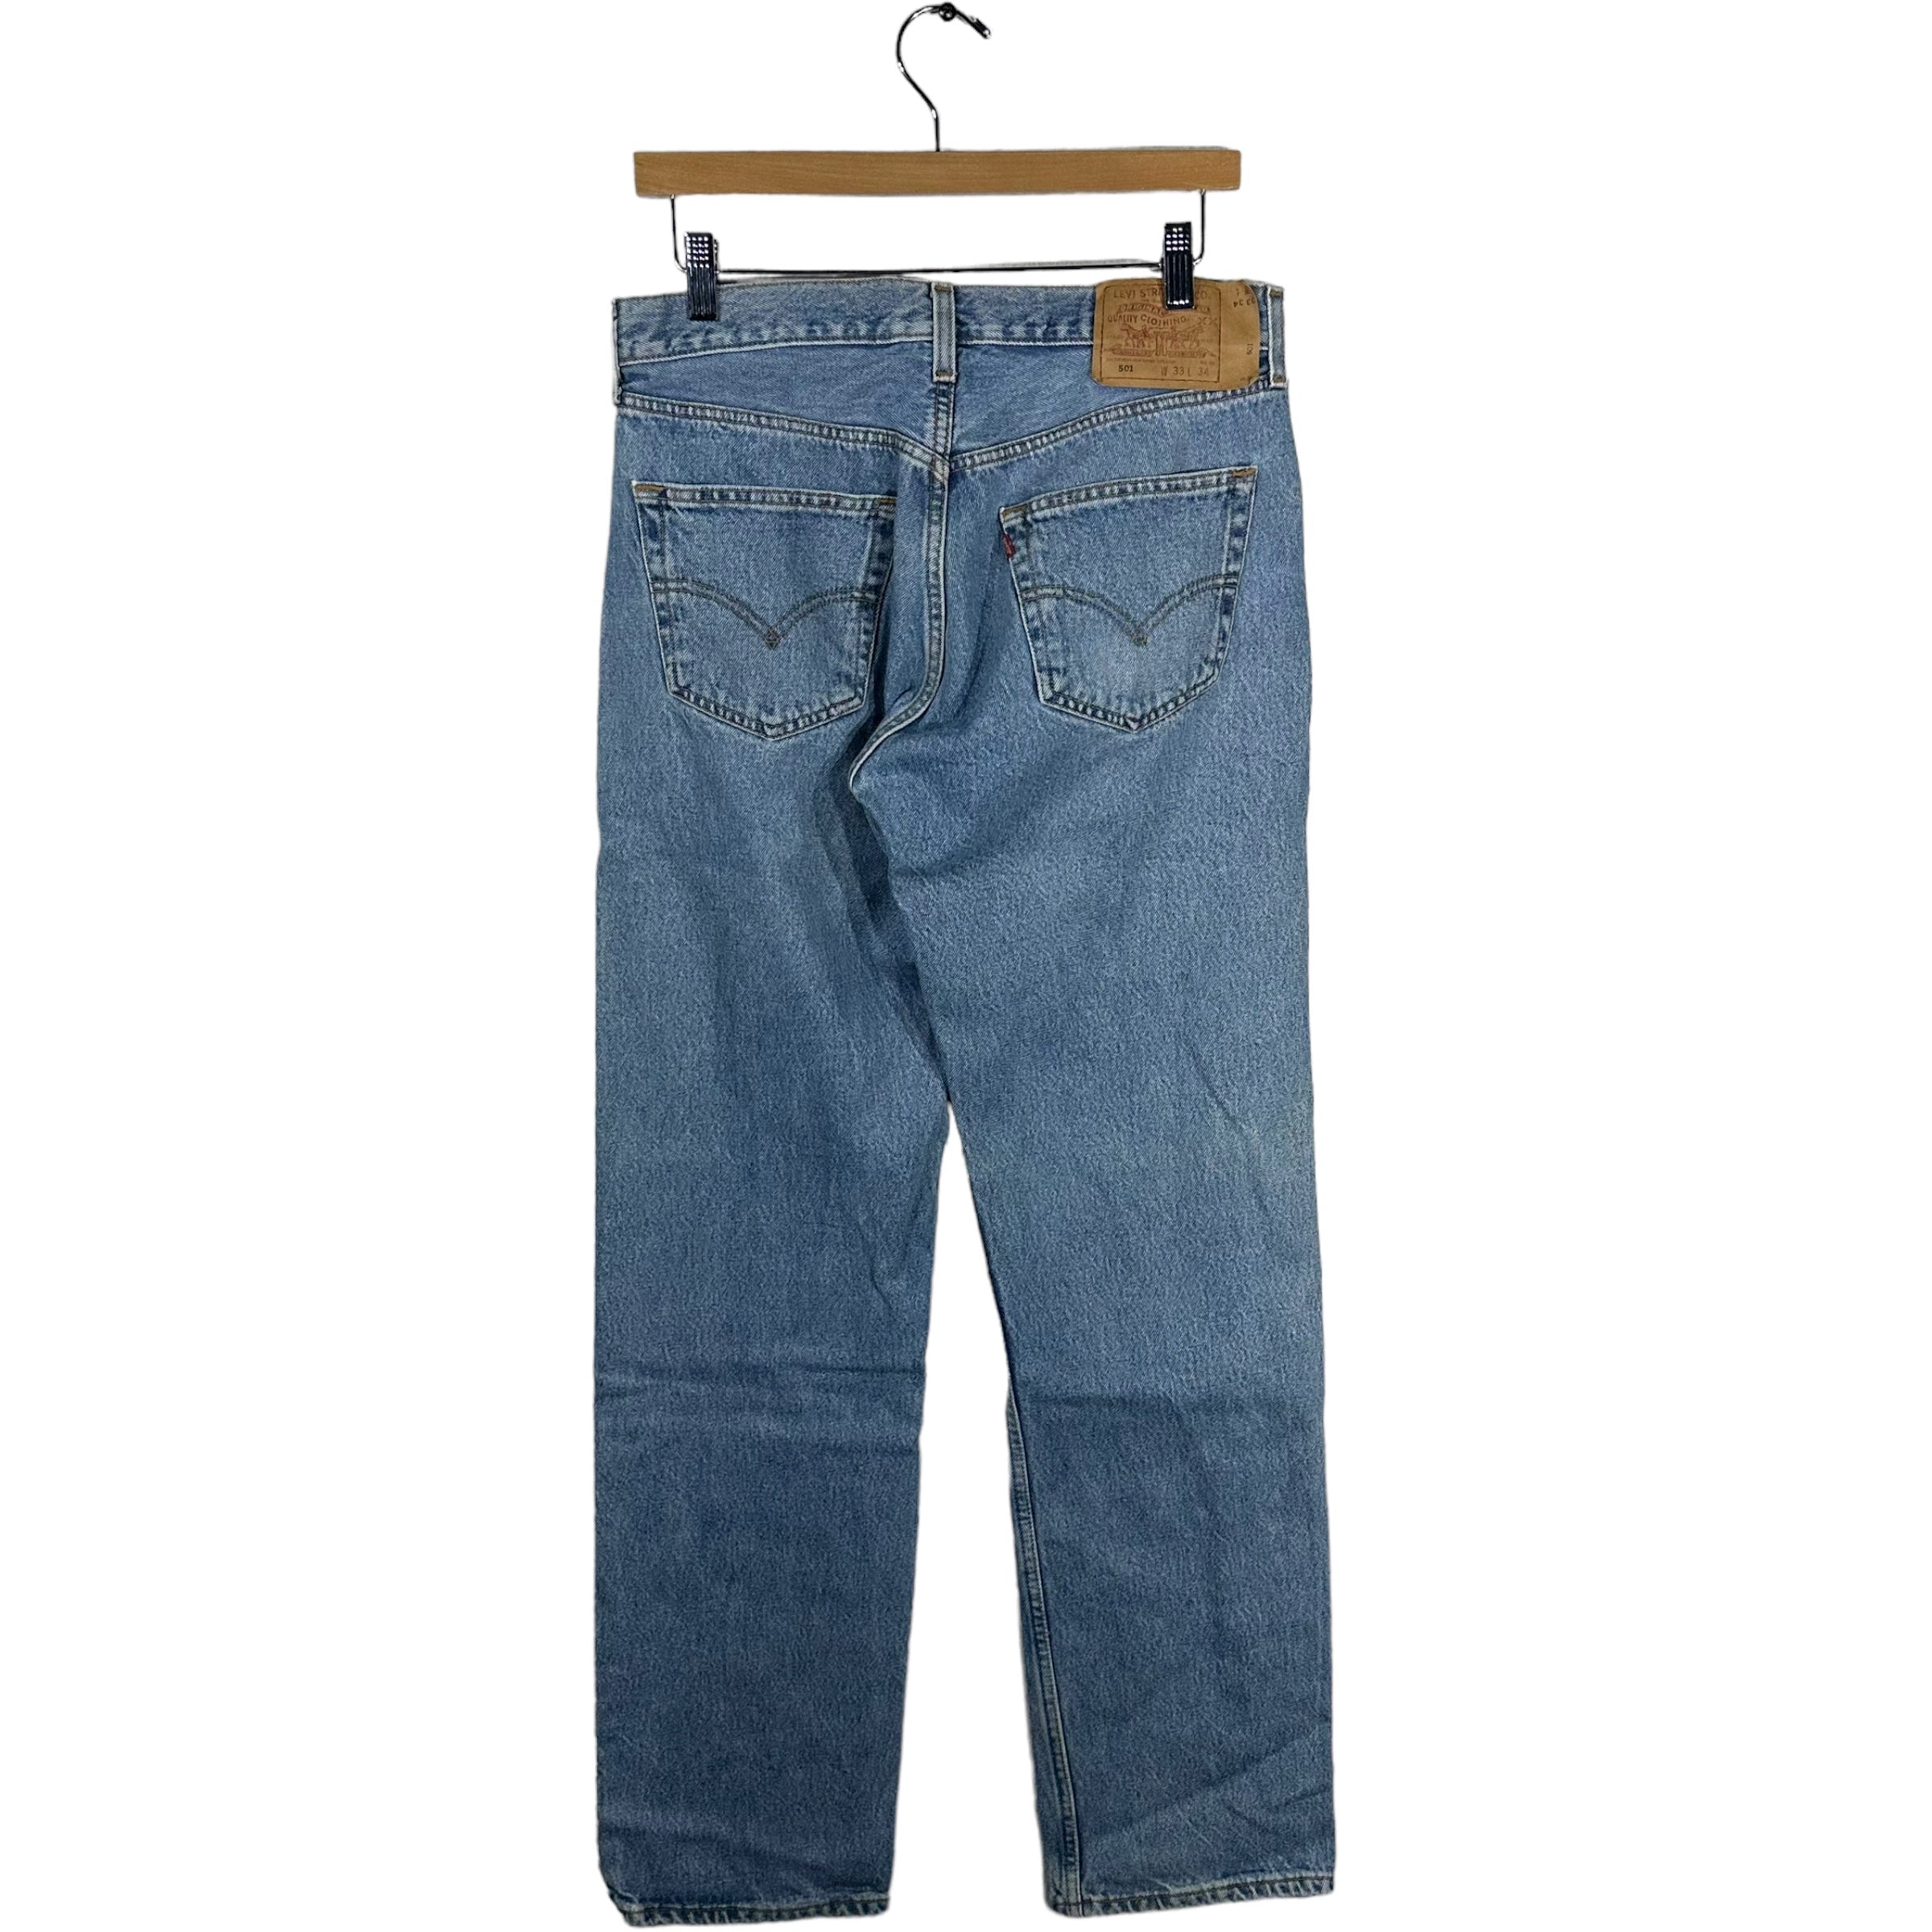 Vintage Levis 501 Denim Pants